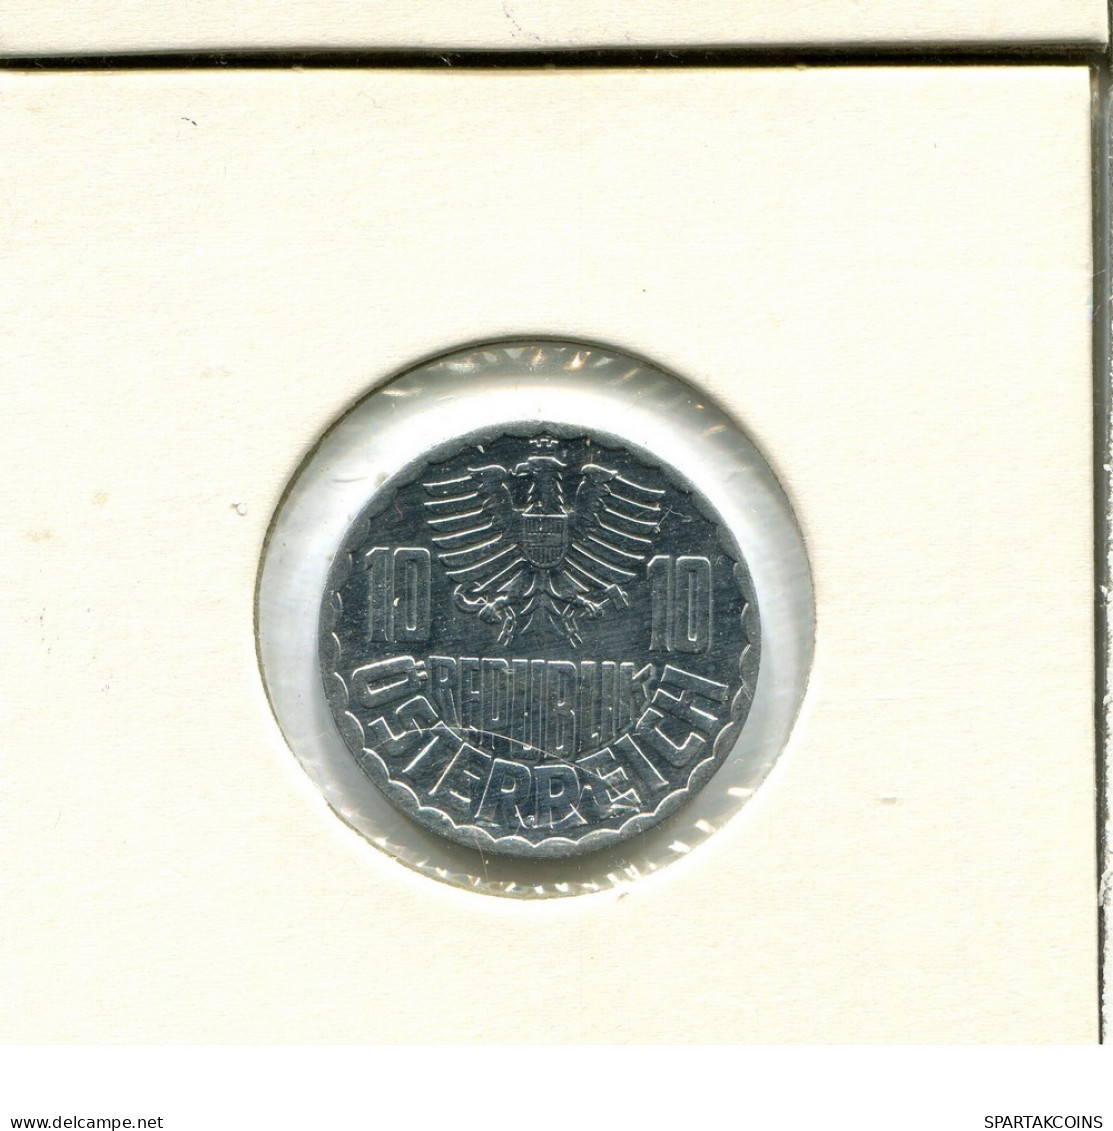 10 GROSCHEN 1978 AUSTRIA Coin #AV042.U.A